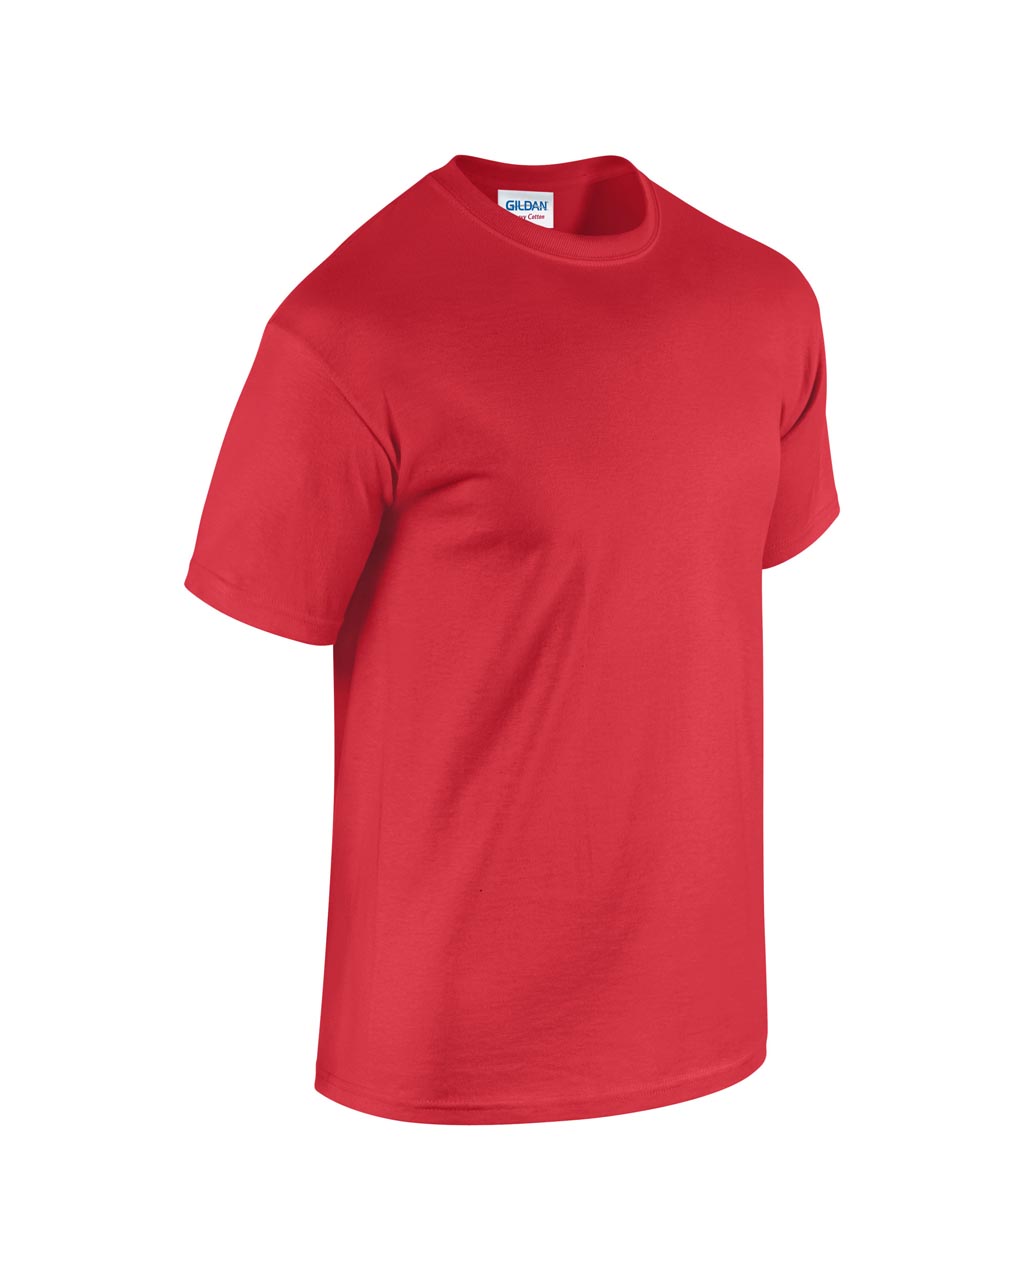 Gildan 5000 Red póló (100% pamut, piros)